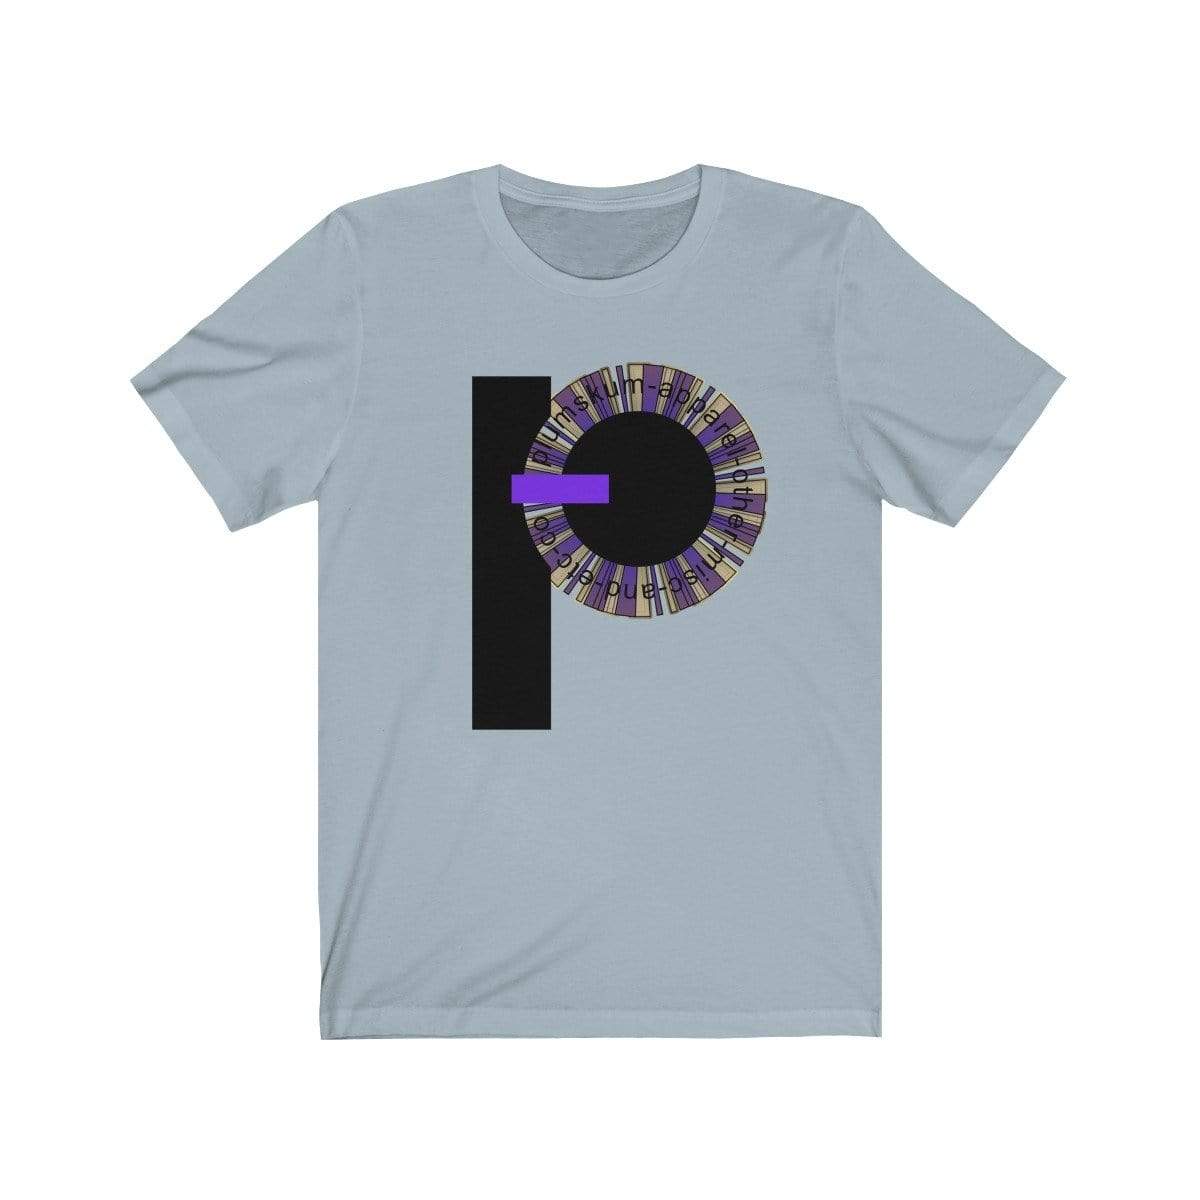 Printify T-Shirt Light Blue / XS Plumskum Pinwheel Etc. Co. TShirt